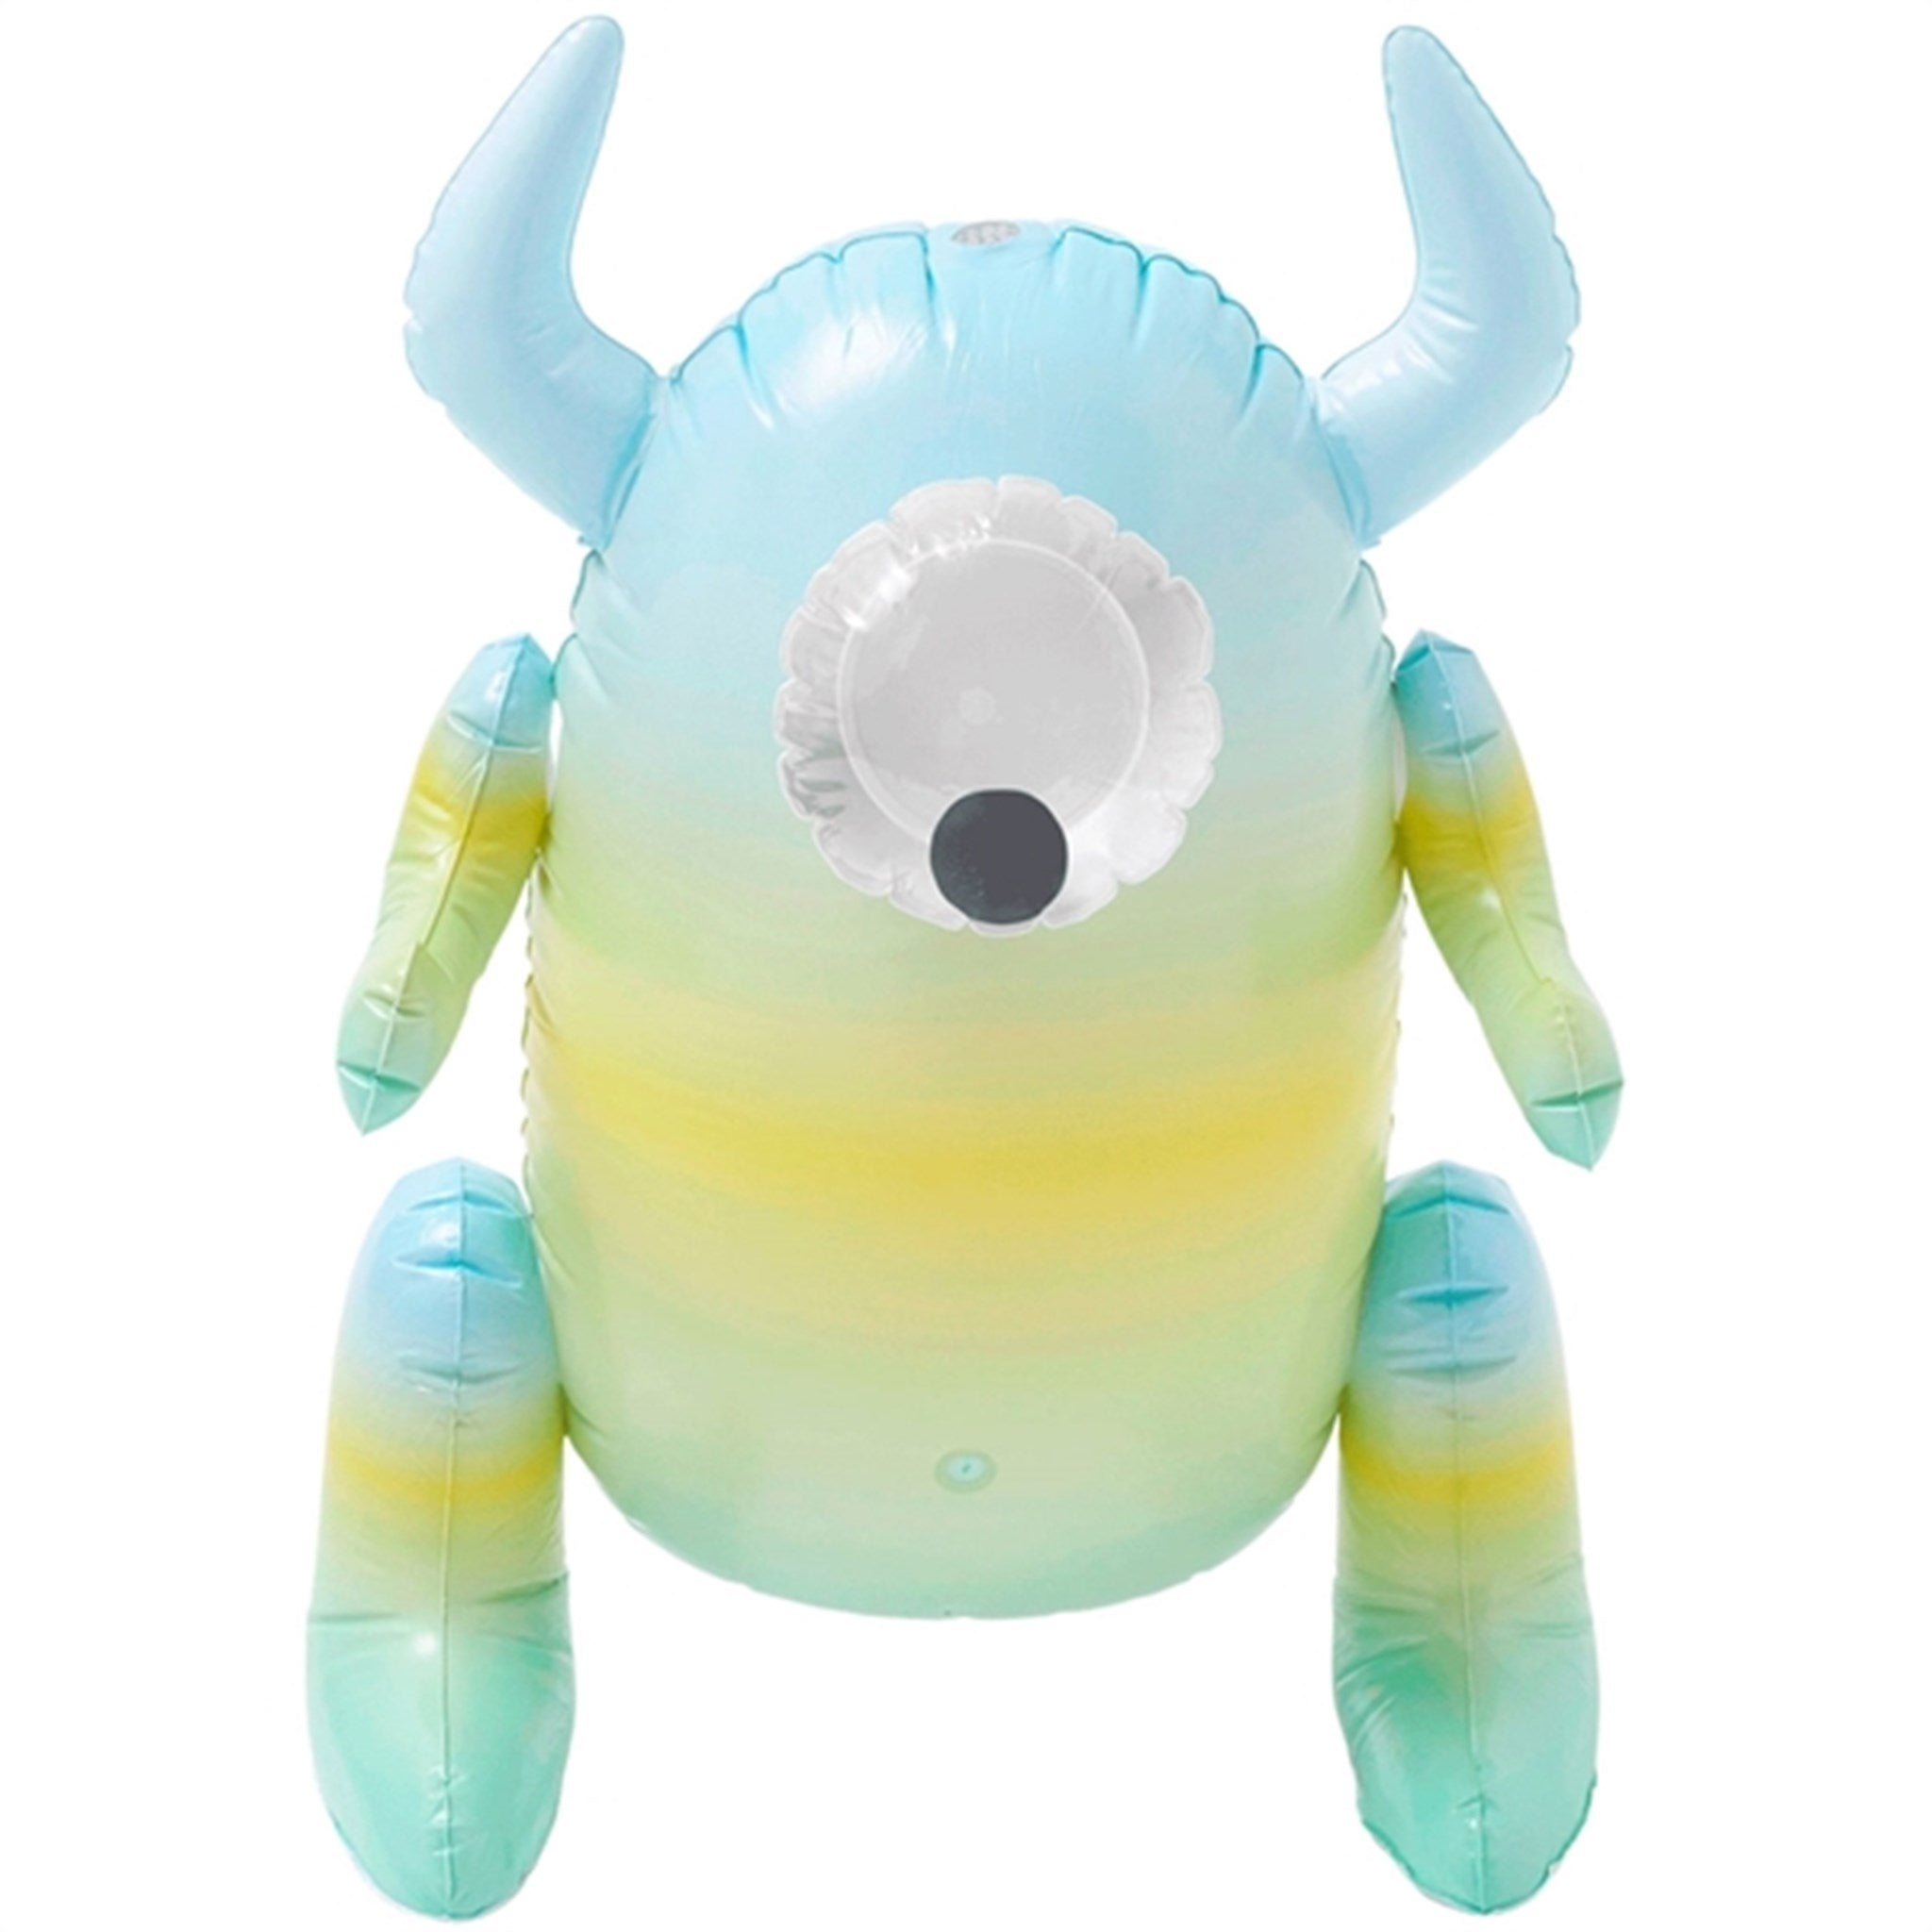 SunnyLife Inflatable Sprinkler Monty The Monster